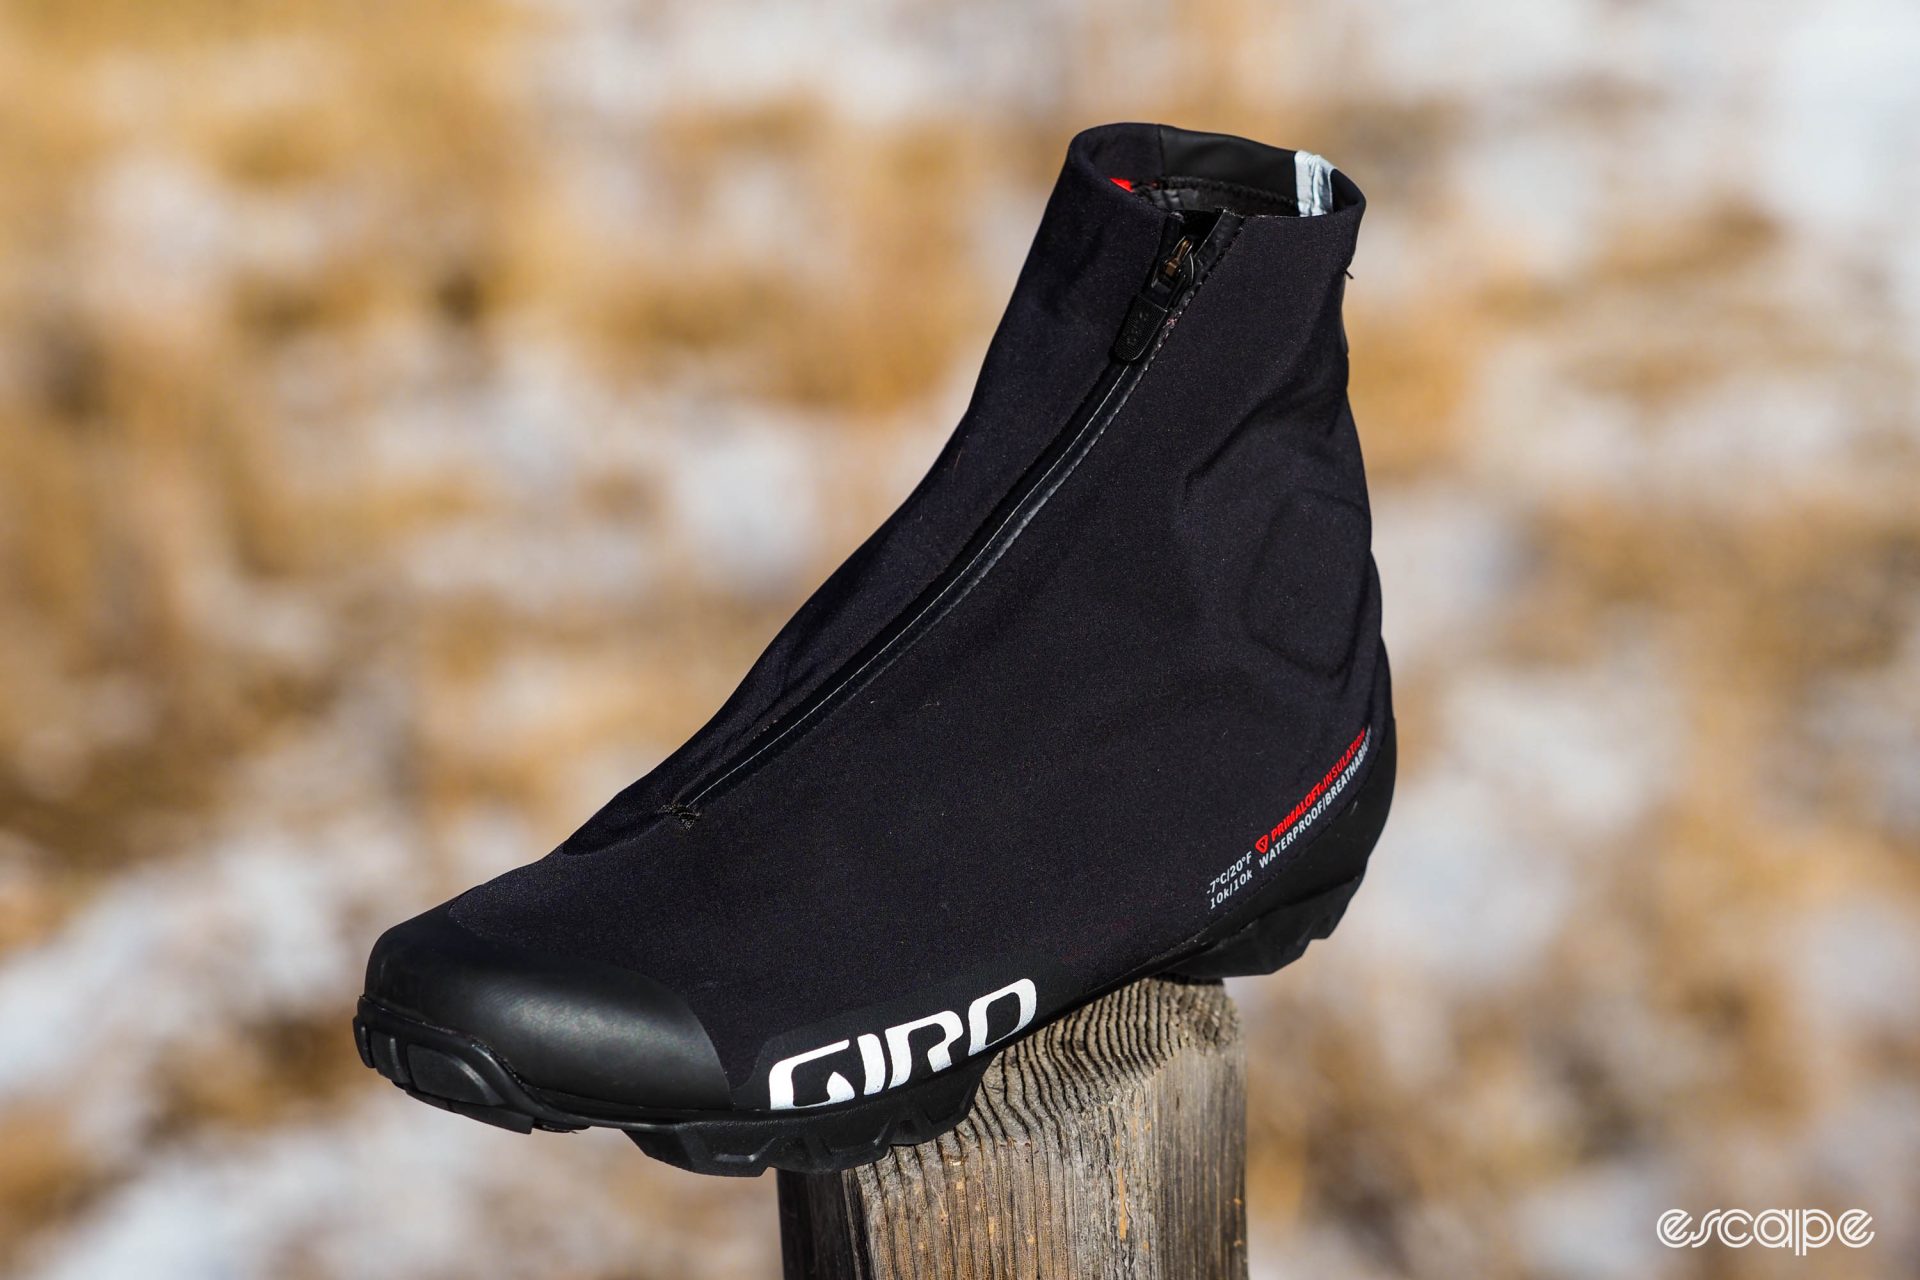 Giro Blaze winter cycling shoes